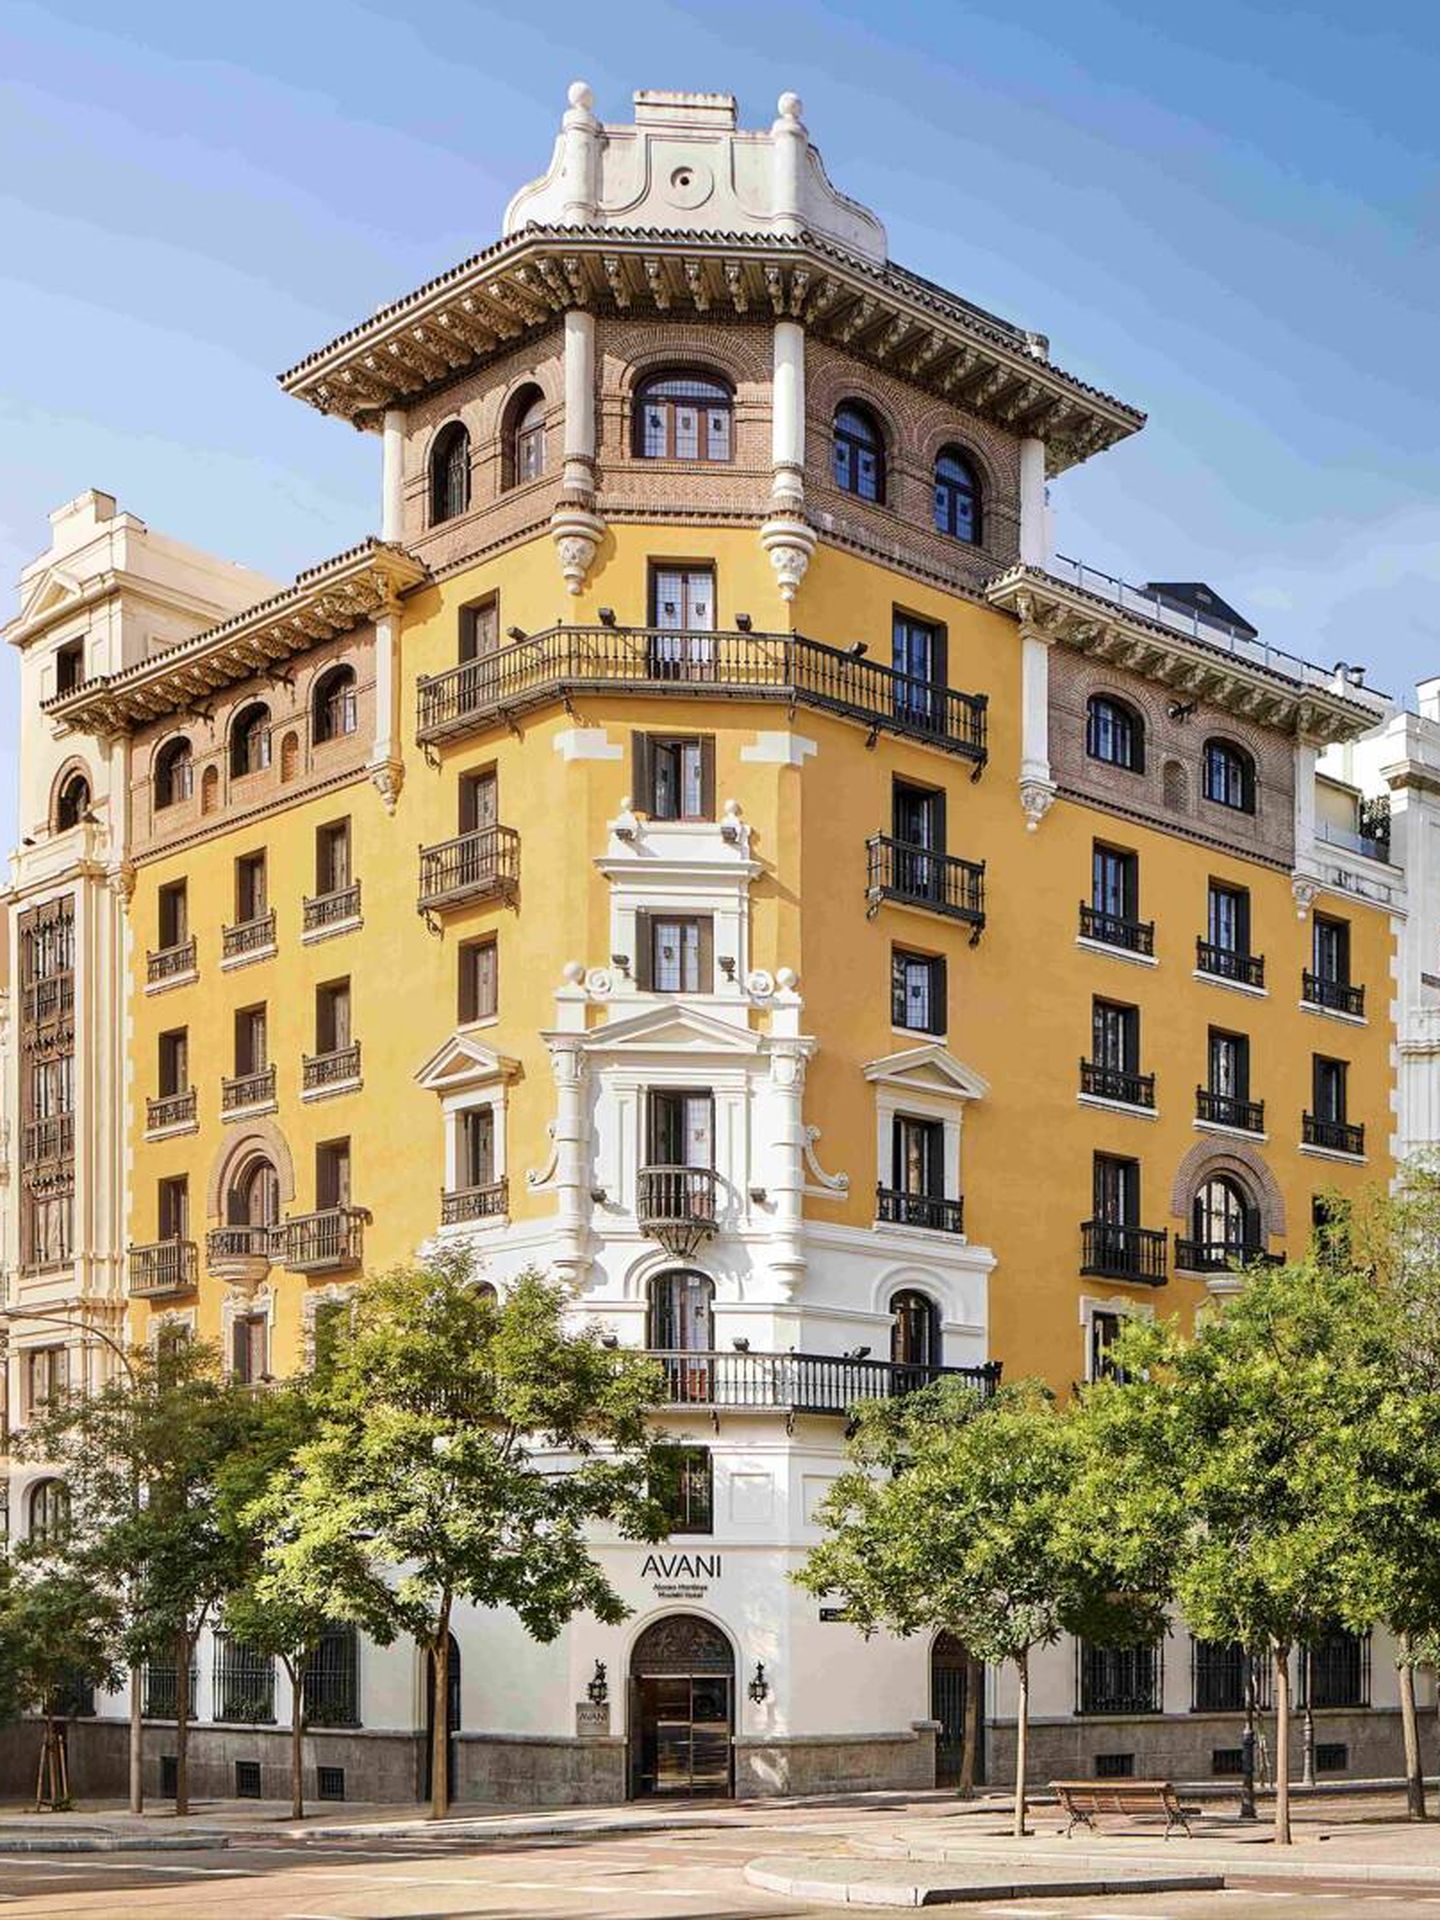 El flamante Avani Alonso Martínez se encuentra en el número 5 de la calle de Santa Engracia, a menos de 100 metros de la plaza de la que este hotel toma su nombre. (Cortesía)